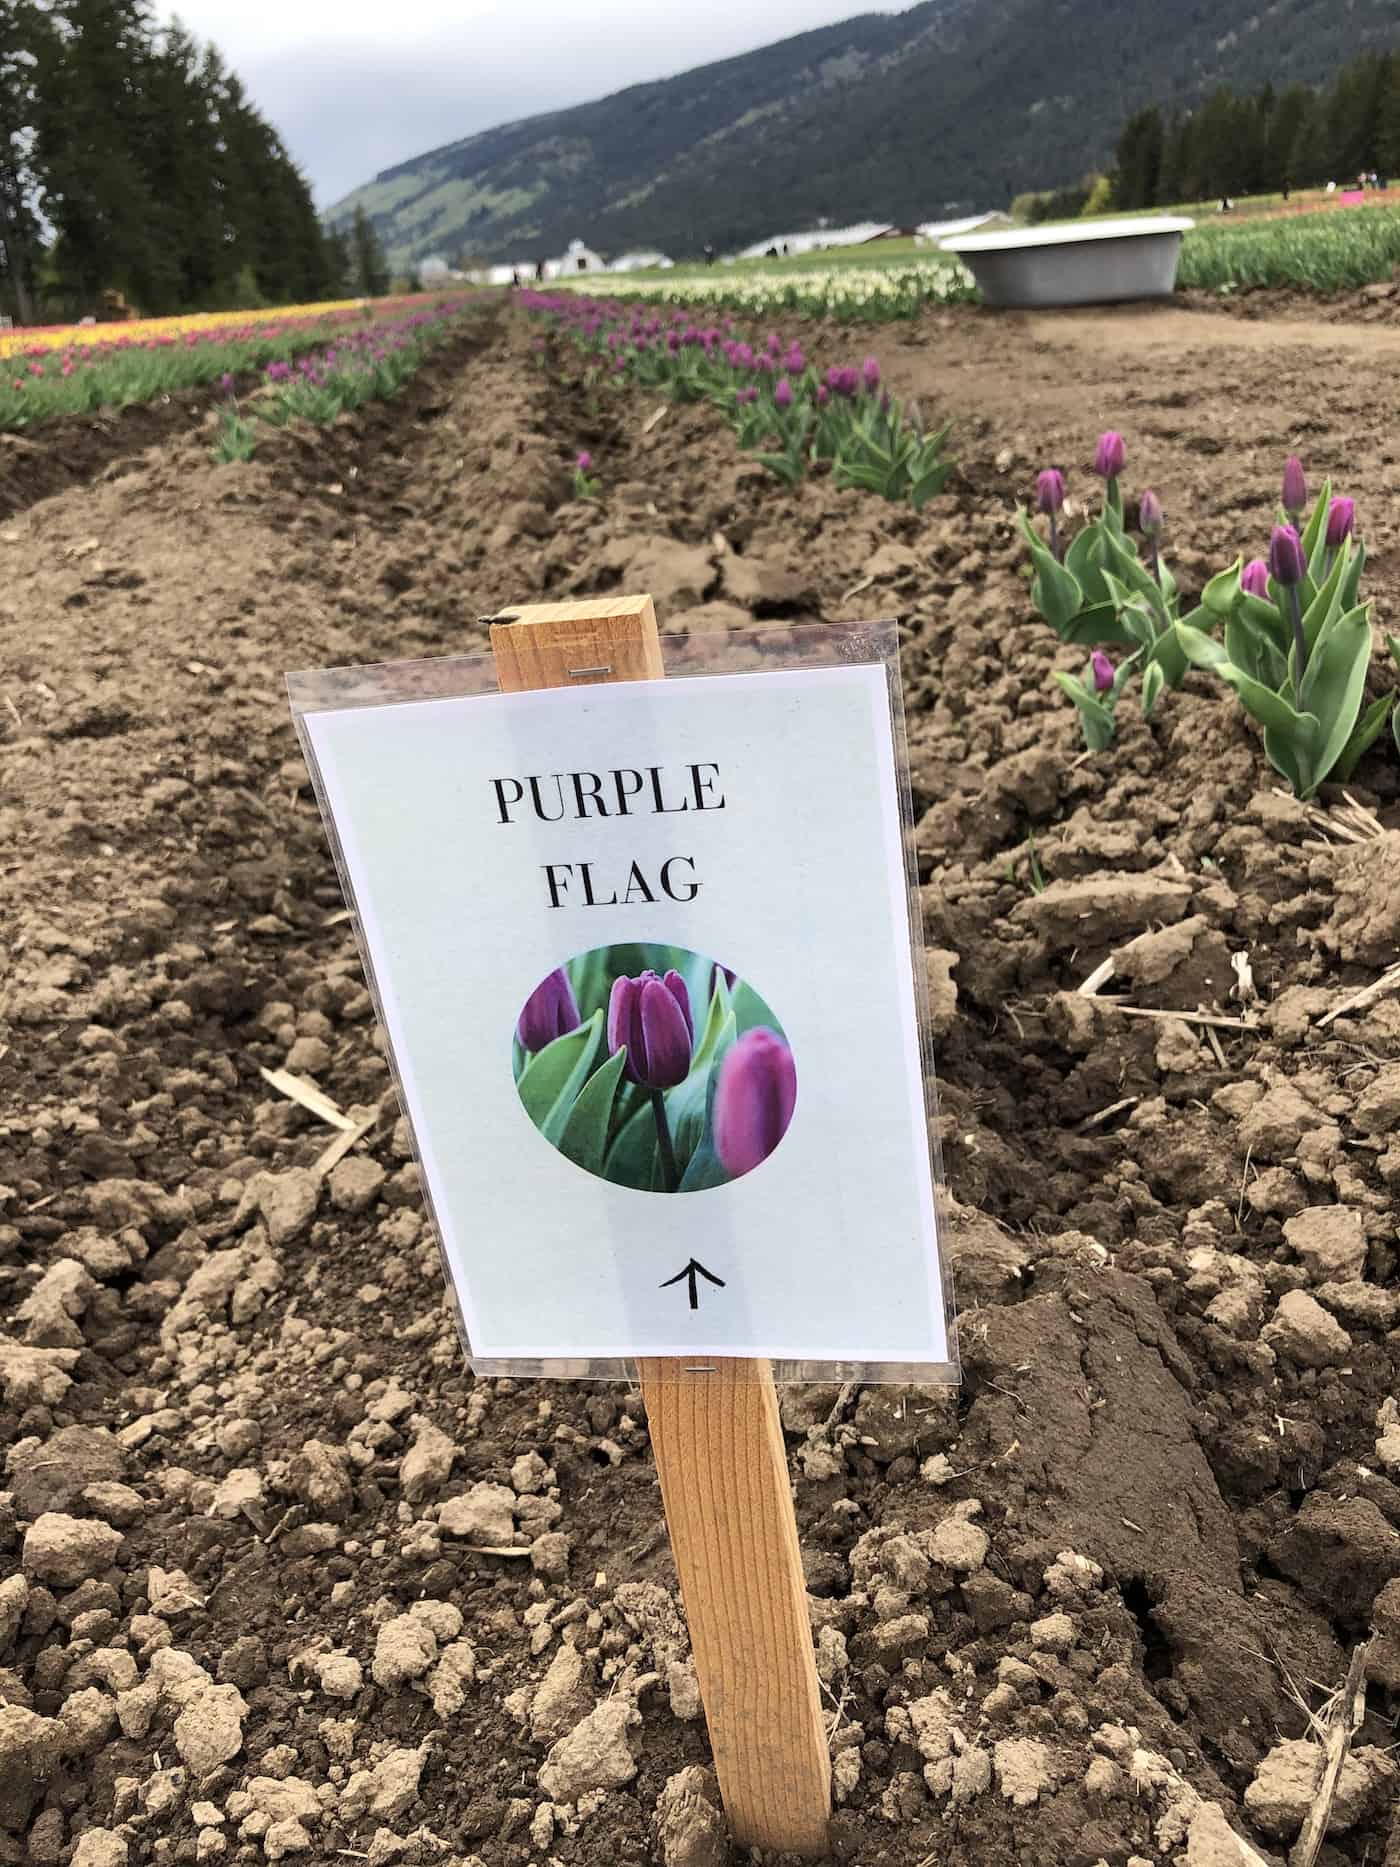 Purple flag tulips